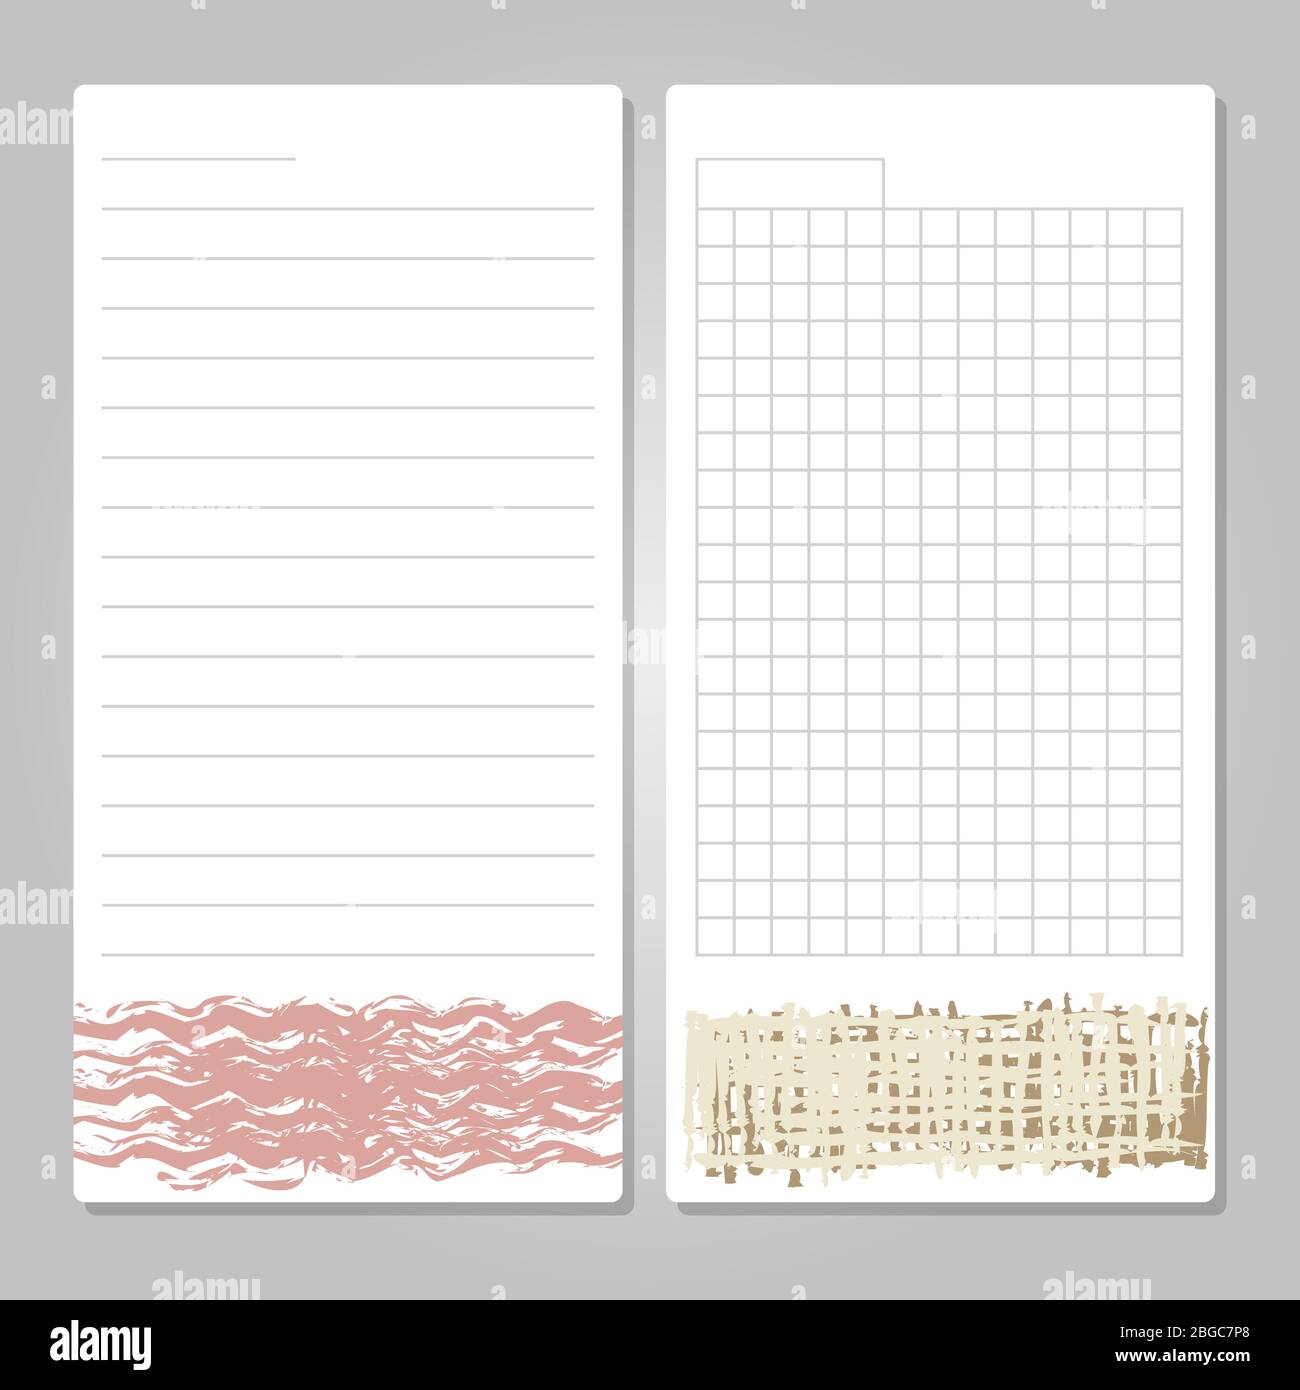 Modelli di pagina per notebook con decorazioni a grunge - carta per note, memo, checklist. Illustrazione vettoriale Illustrazione Vettoriale